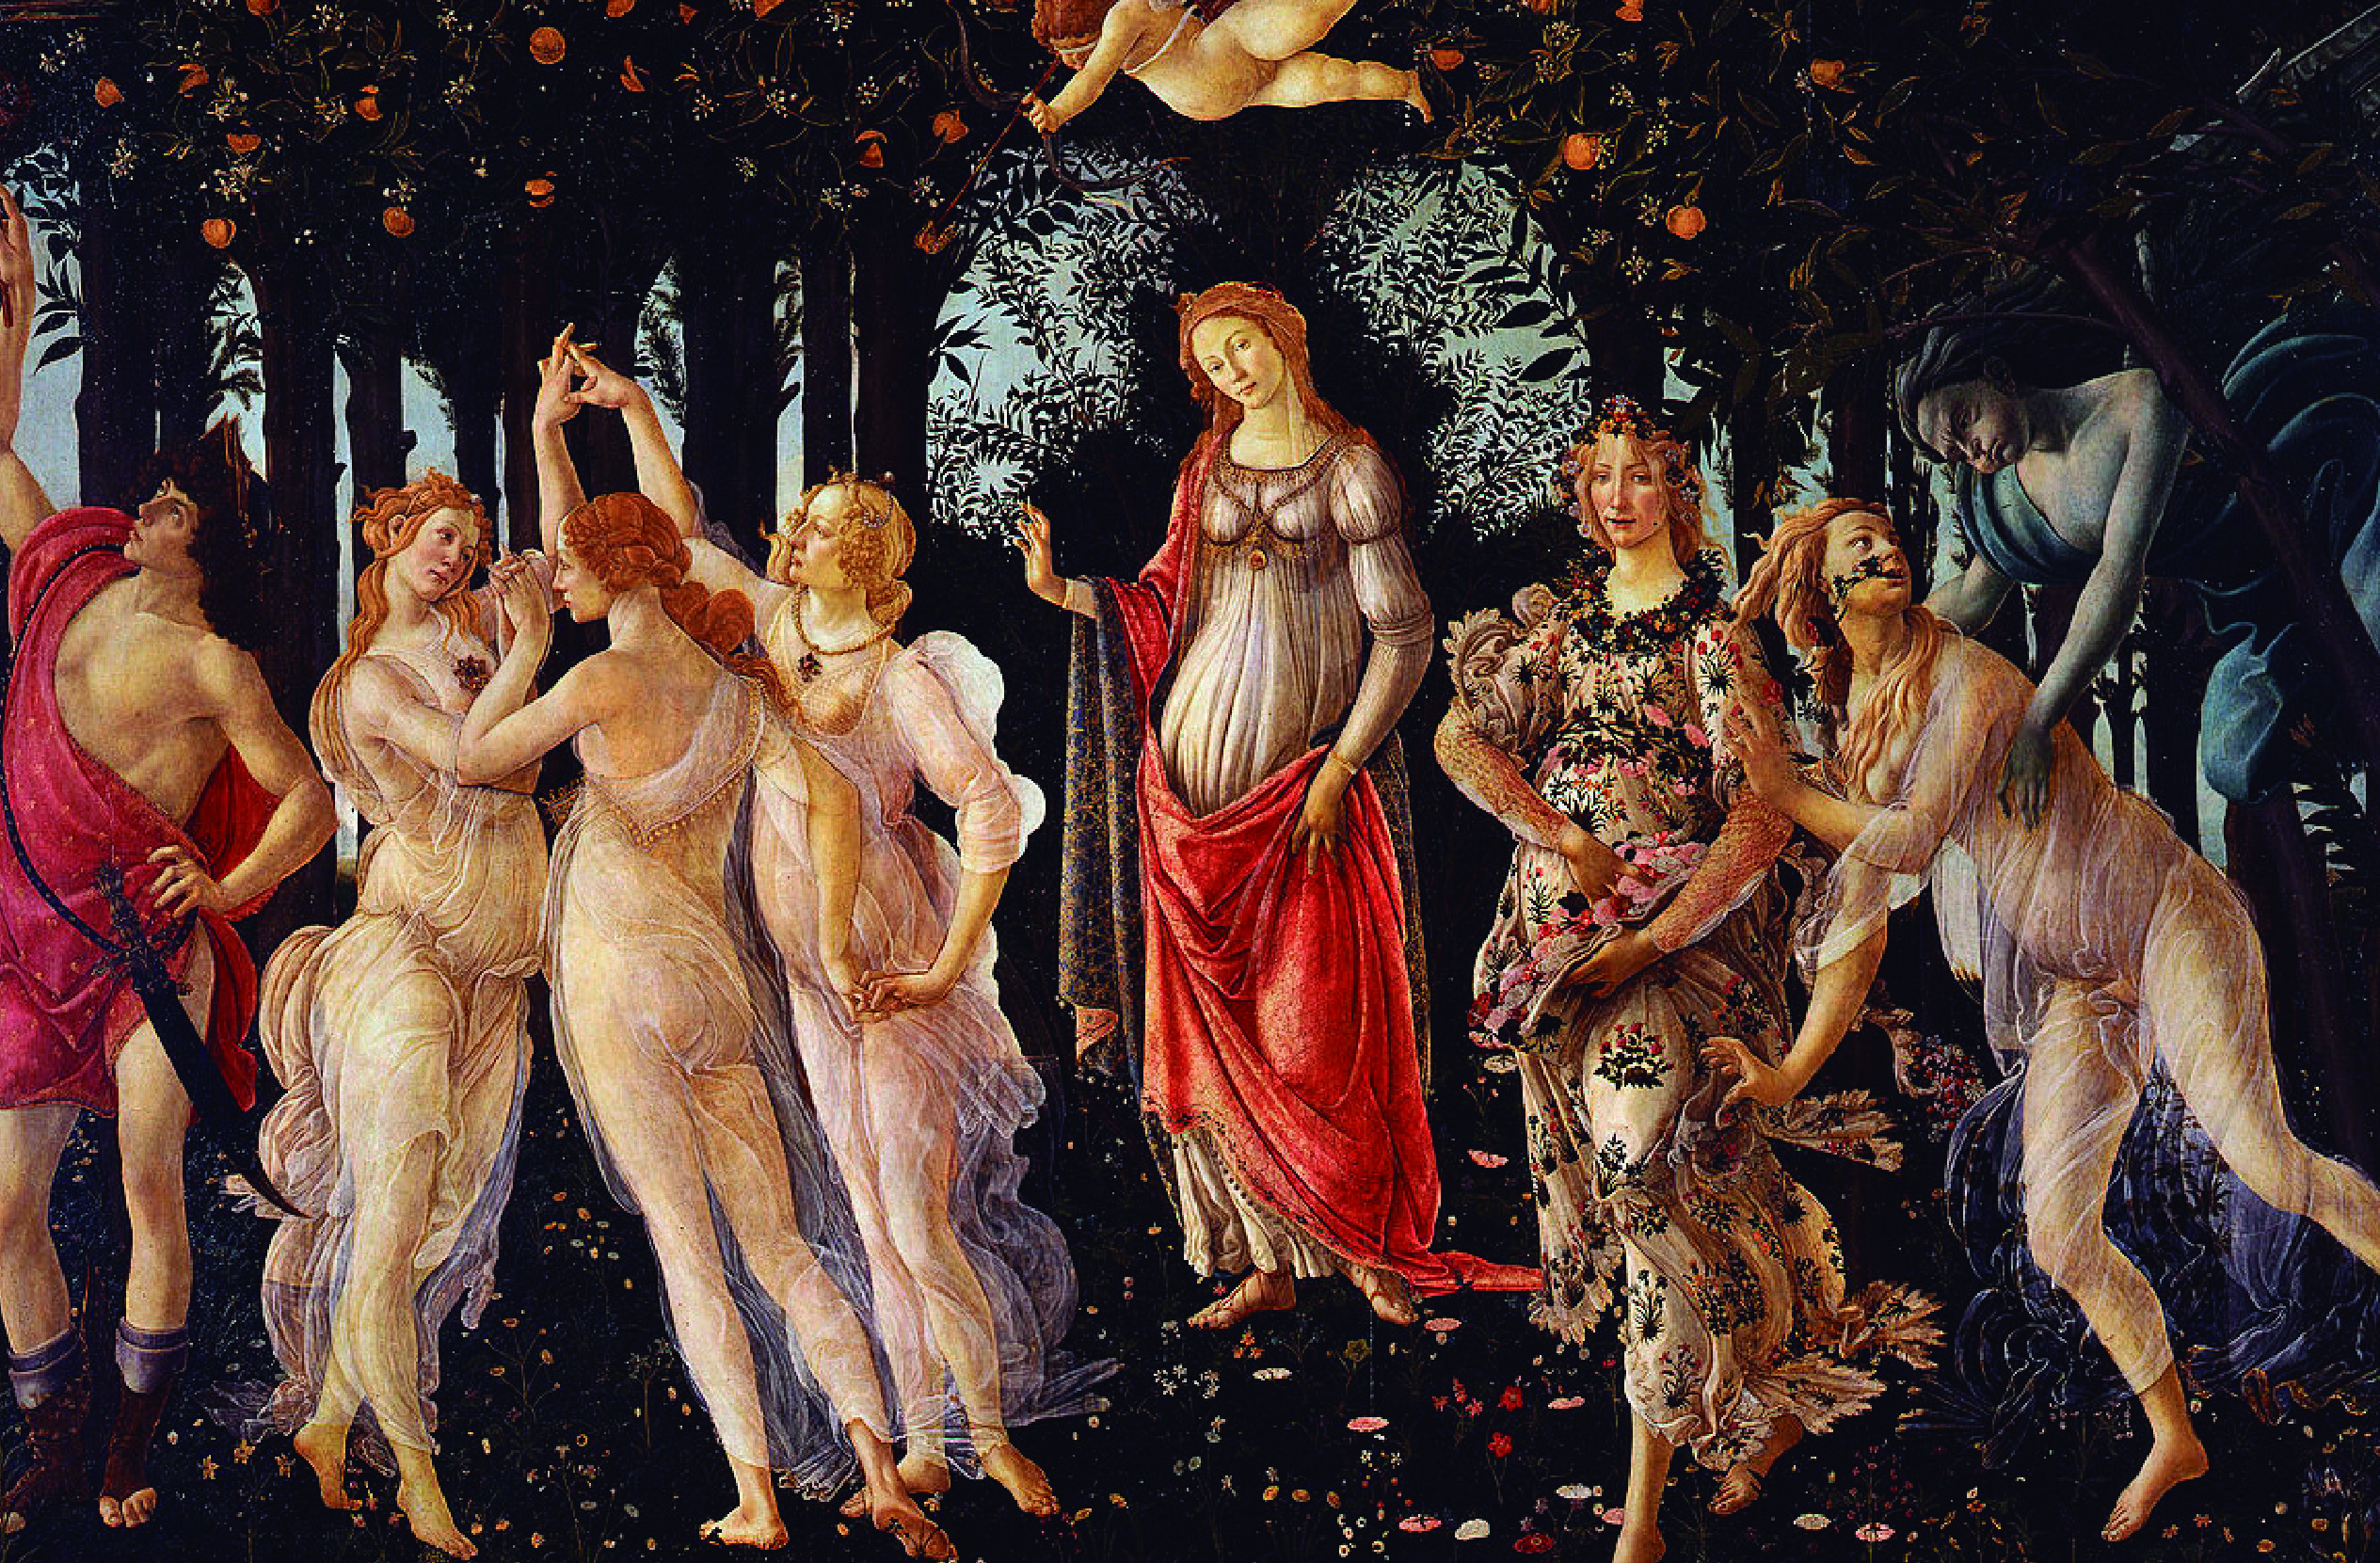 Pinturas del Siglo XV: Expresiones artísticas en la Edad Media.